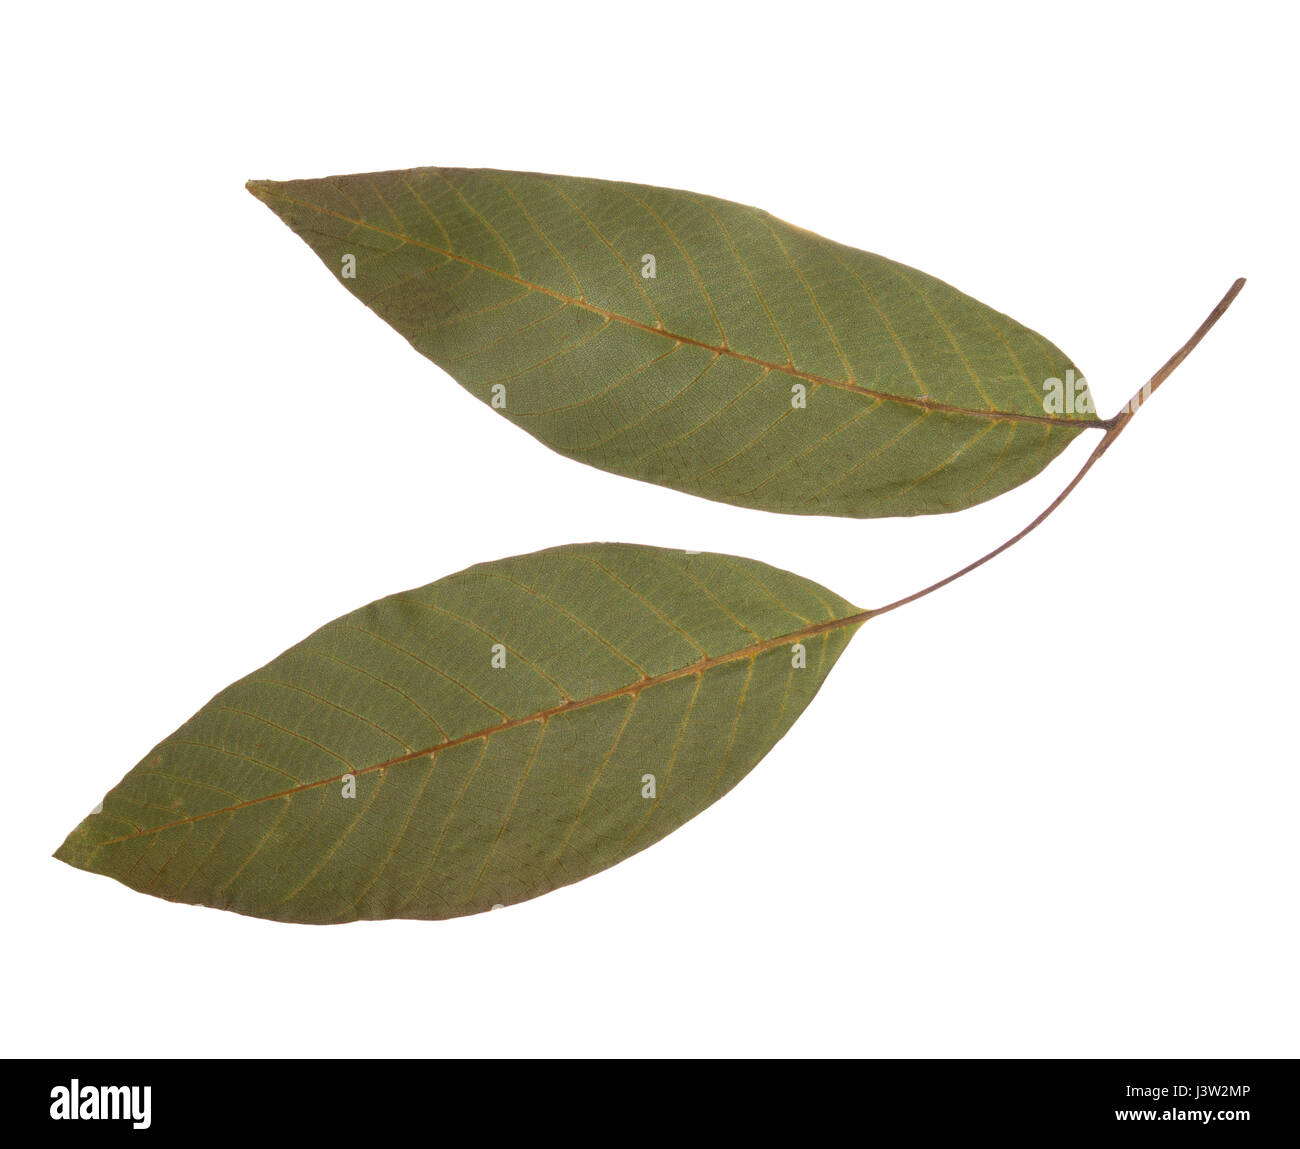 Essiccata e pressata di foglie di noce isolata. Erbario di foglie di alberi da frutto Foto Stock